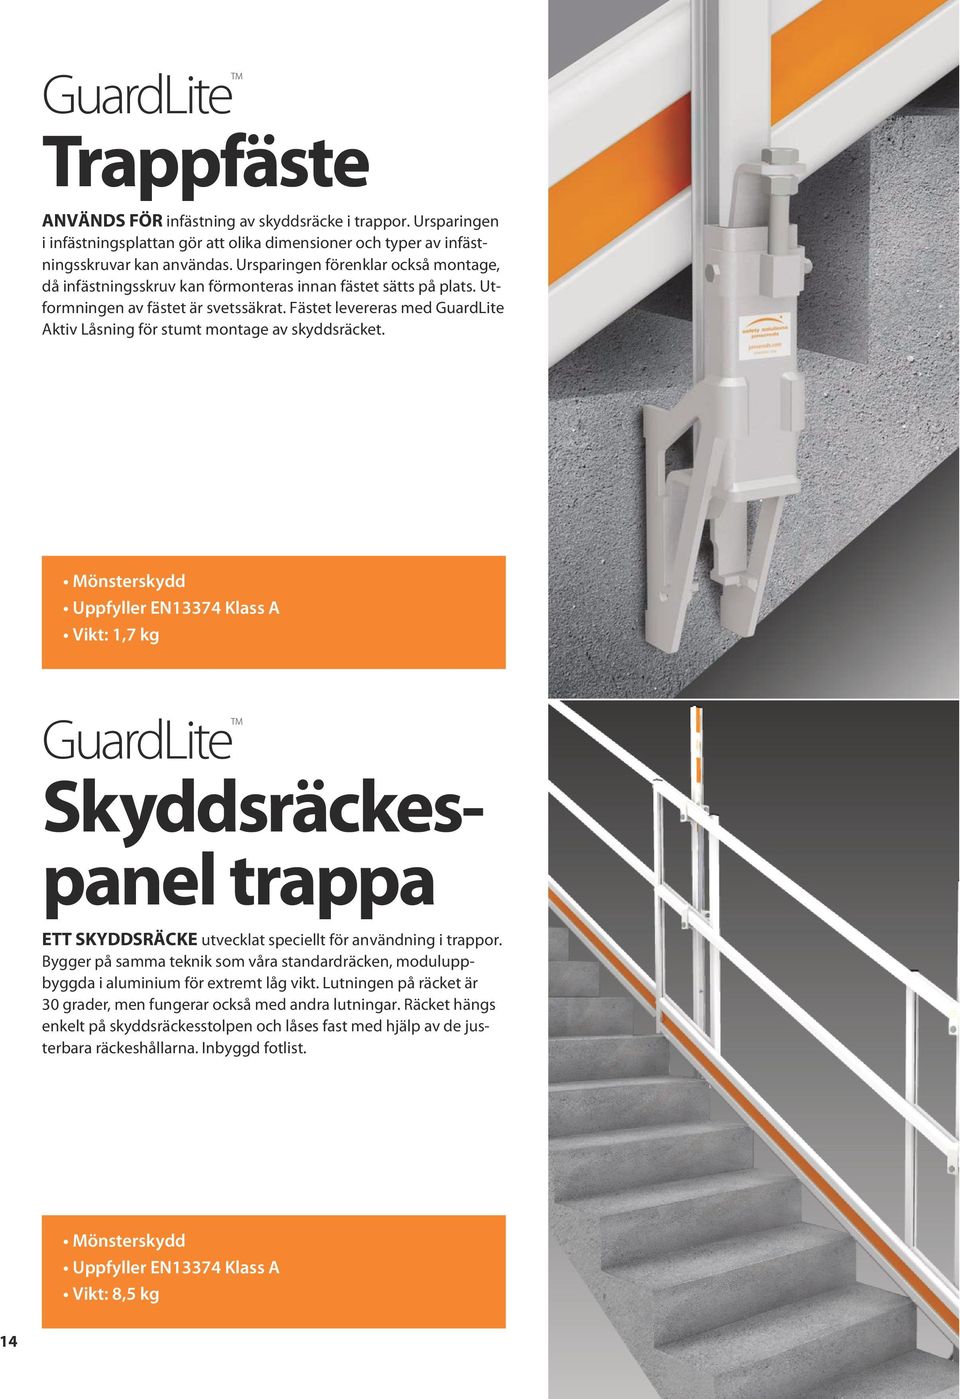 Fästet levereras med Aktiv Låsning för stumt montage av skyddsräcket. Vikt: 1,7 kg Skyddsräckespanel trappa ETT SKYDDSRÄCKE utvecklat speciellt för användning i trappor.